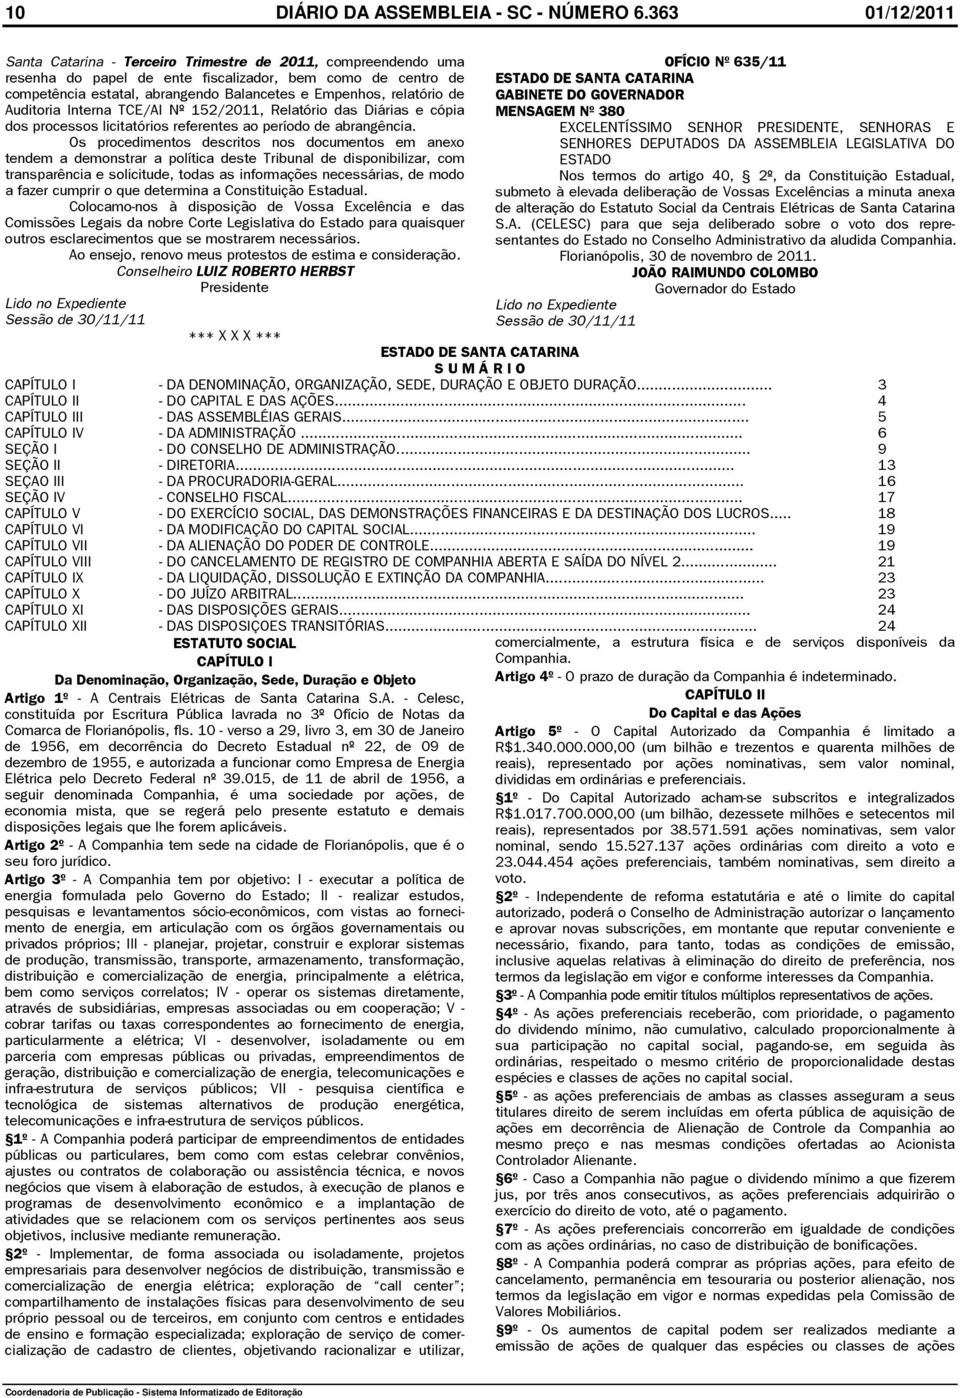 relatório de Auditoria Interna TCE/AI Nº 152/2011, Relatório das Diárias e cópia dos processos licitatórios referentes ao período de abrangência.